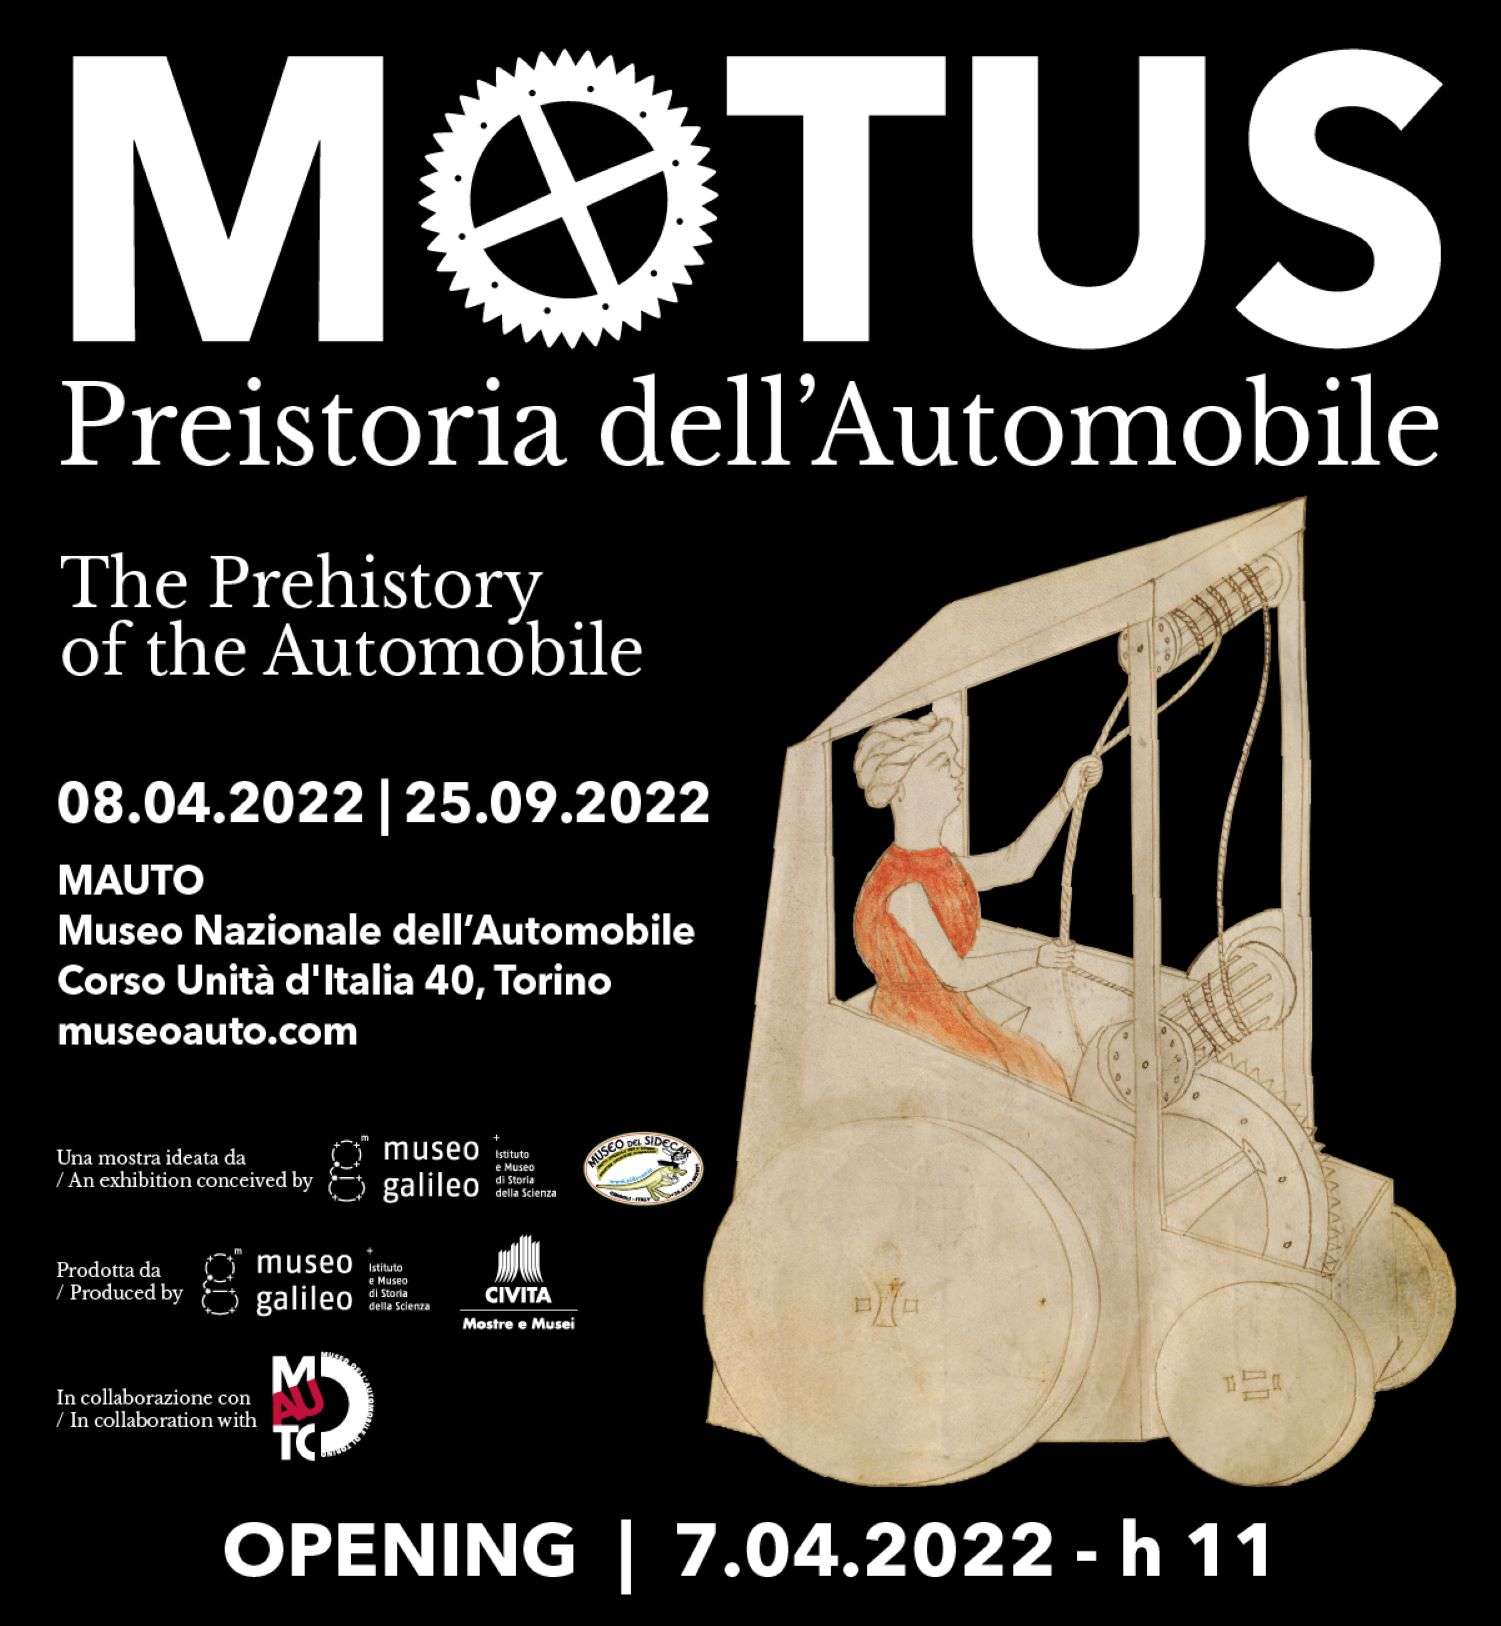 Il Mauto inaugura “Motus. Preistoria dell’Automobile”, dall'8 aprile